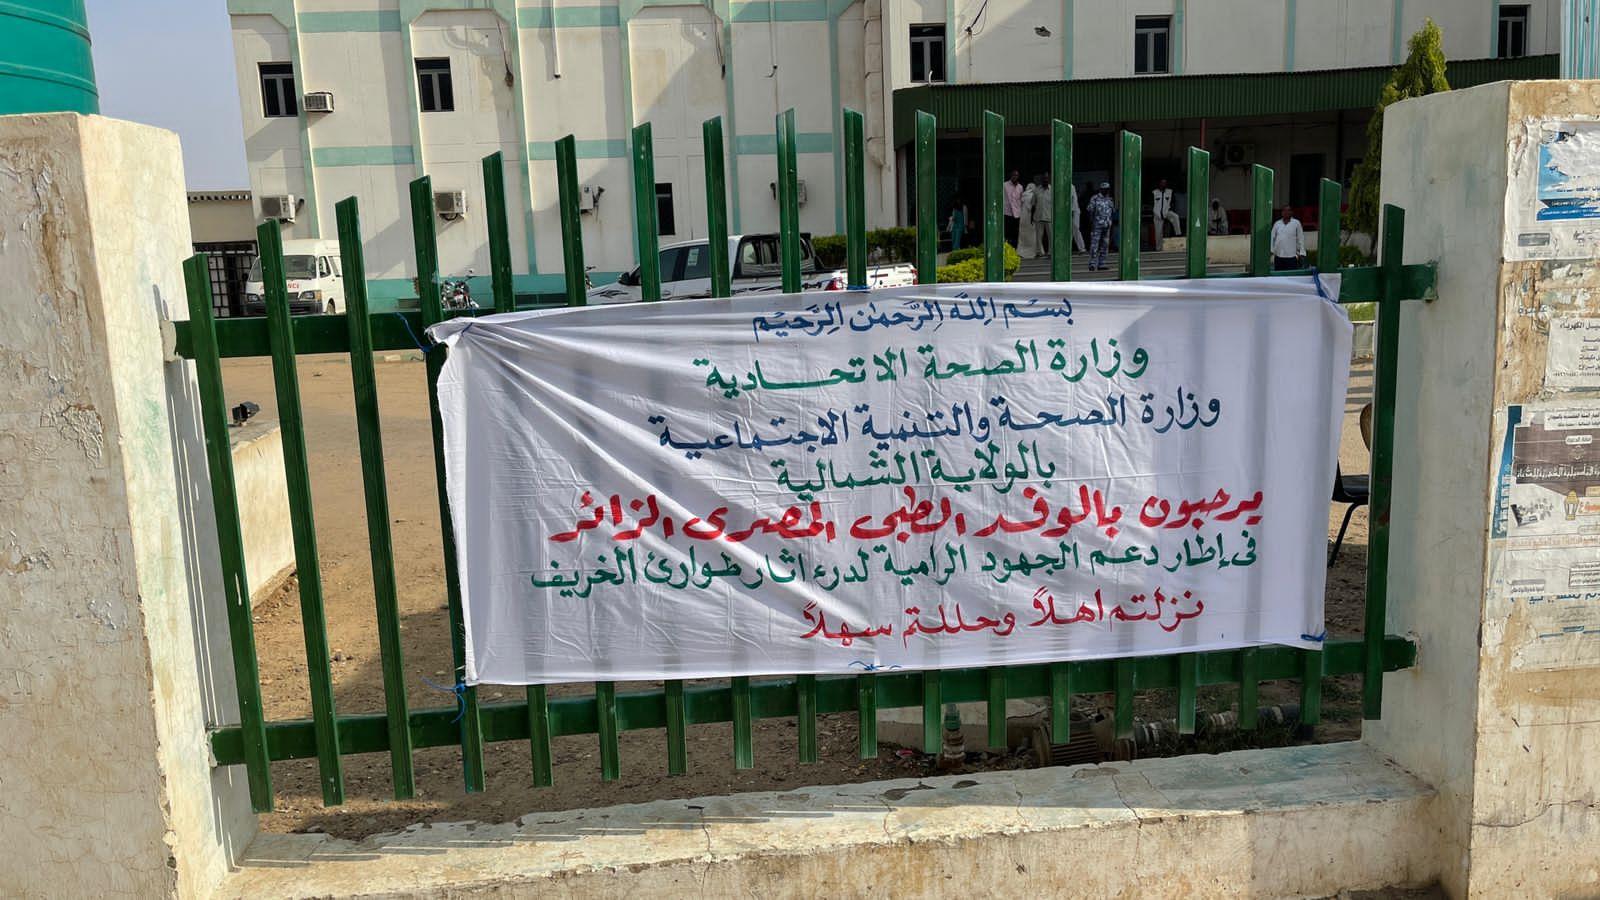  فريق القافلة الطبية المصرية بدولة السودان عقب انتهاء مهام عملهم